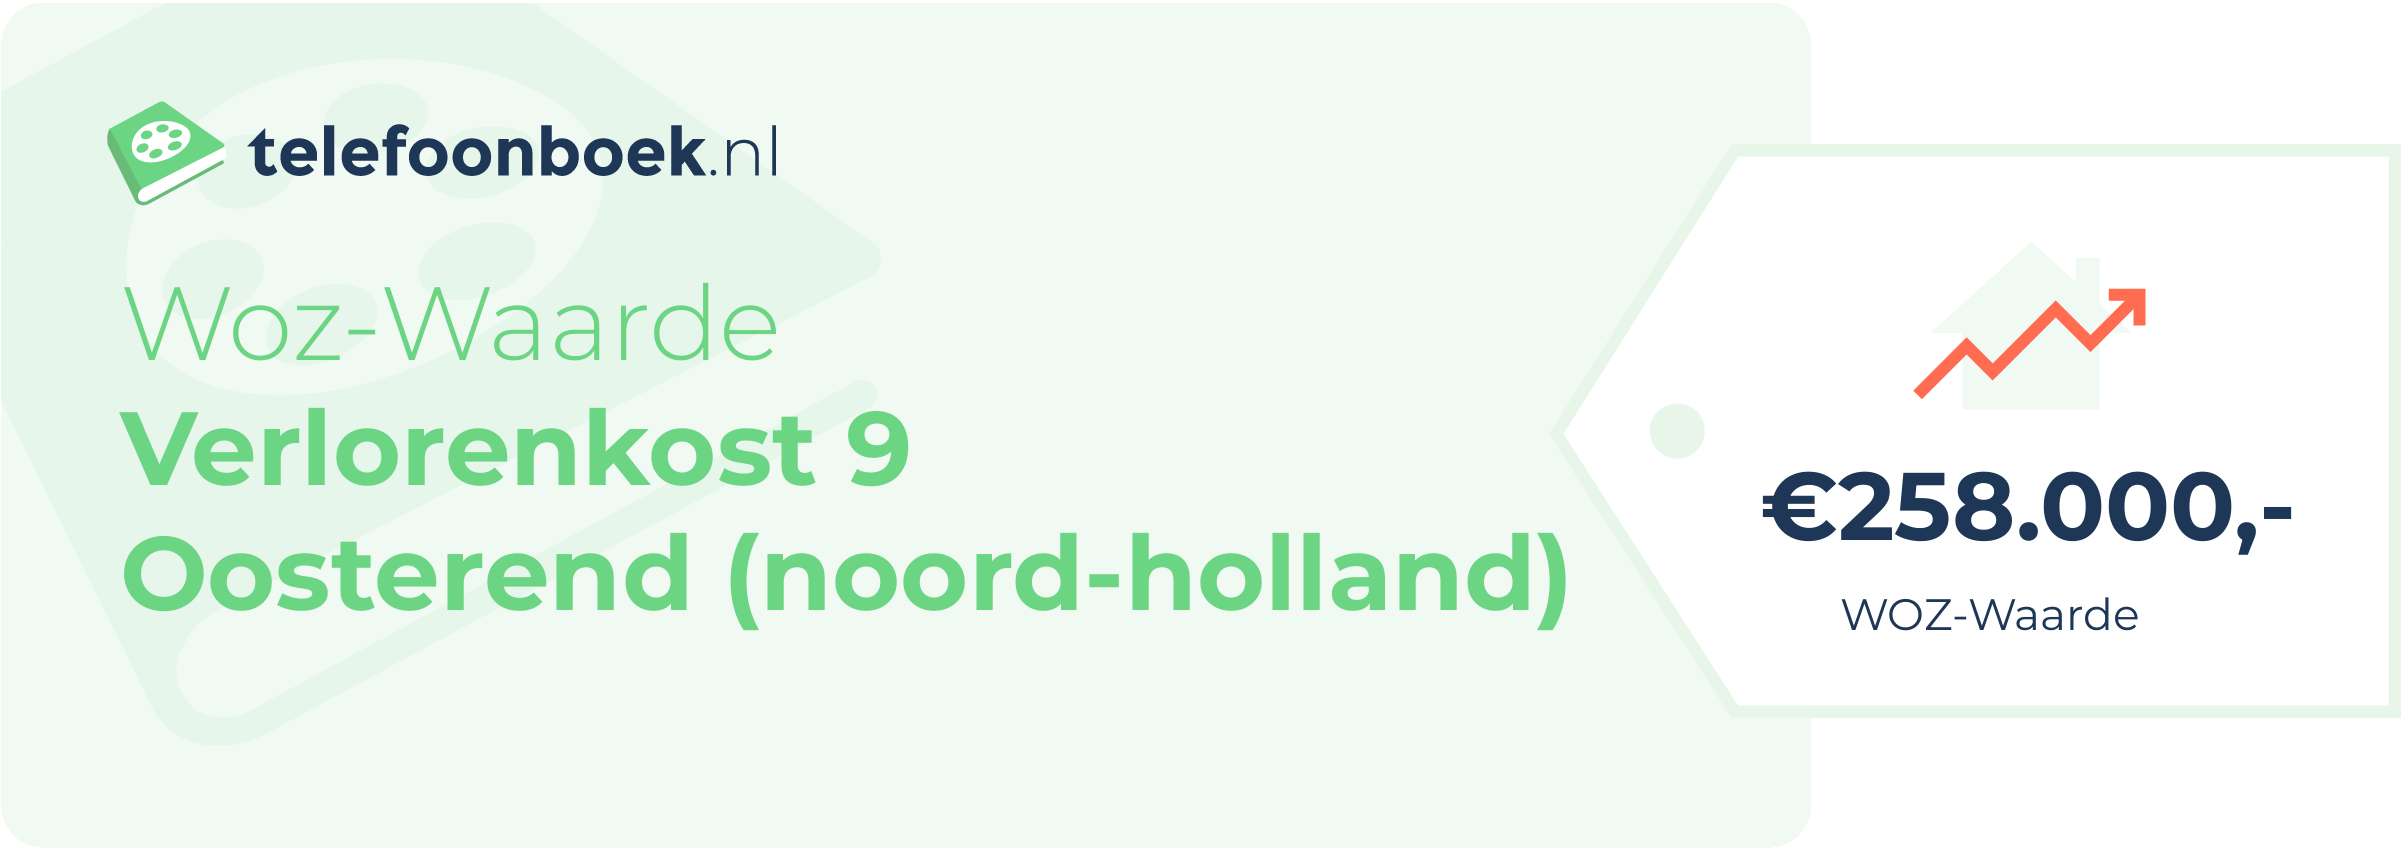 WOZ-waarde Verlorenkost 9 Oosterend (Noord-Holland)